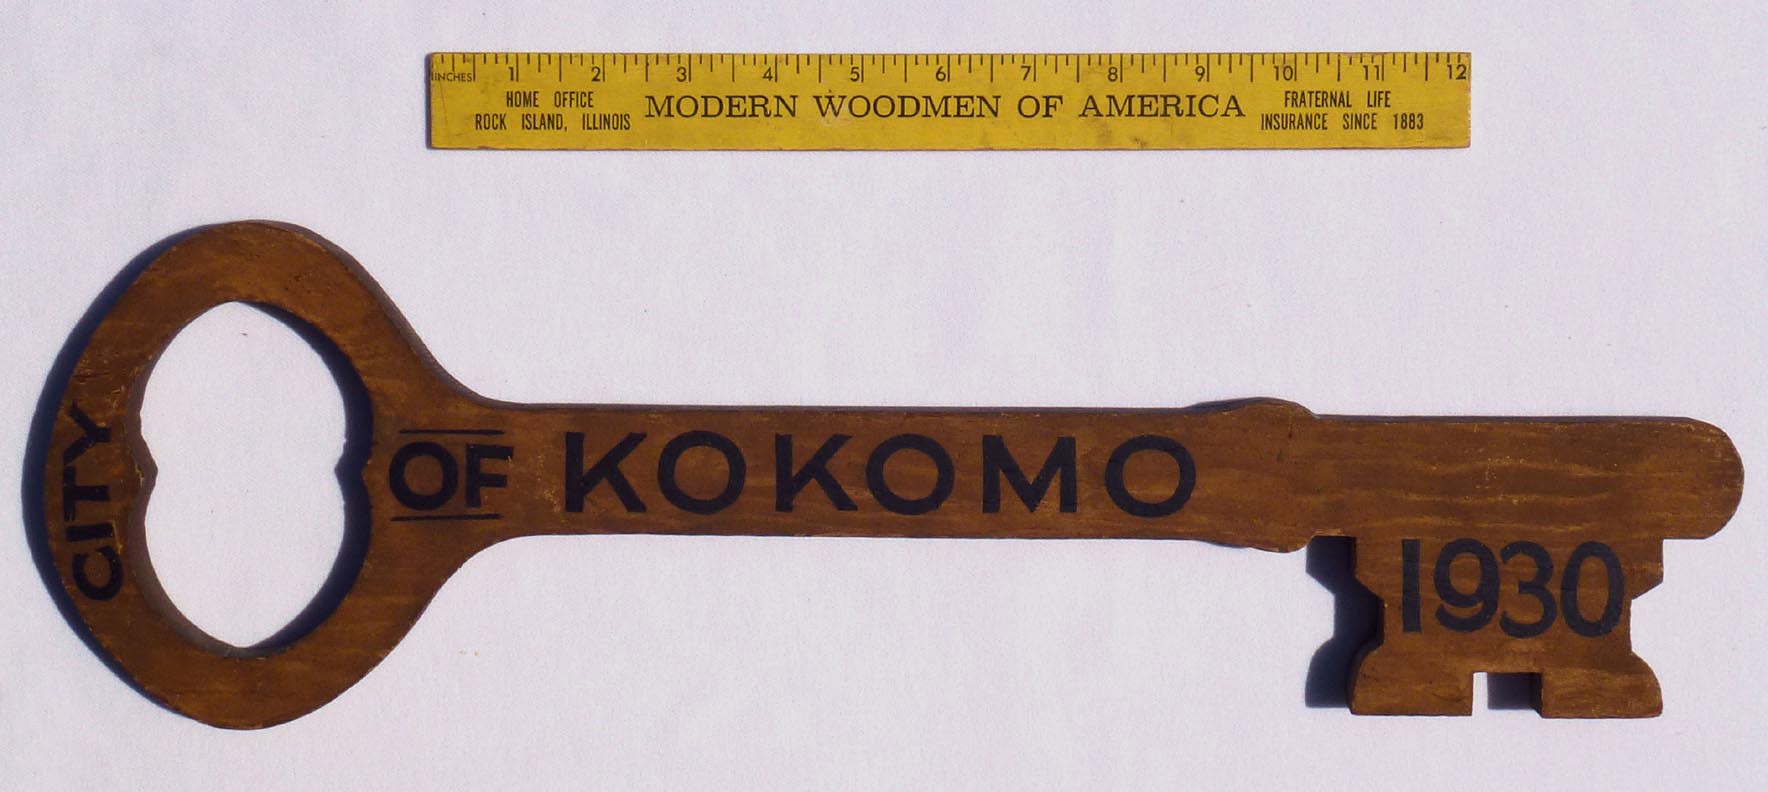 City of Kokomo ceremonial key